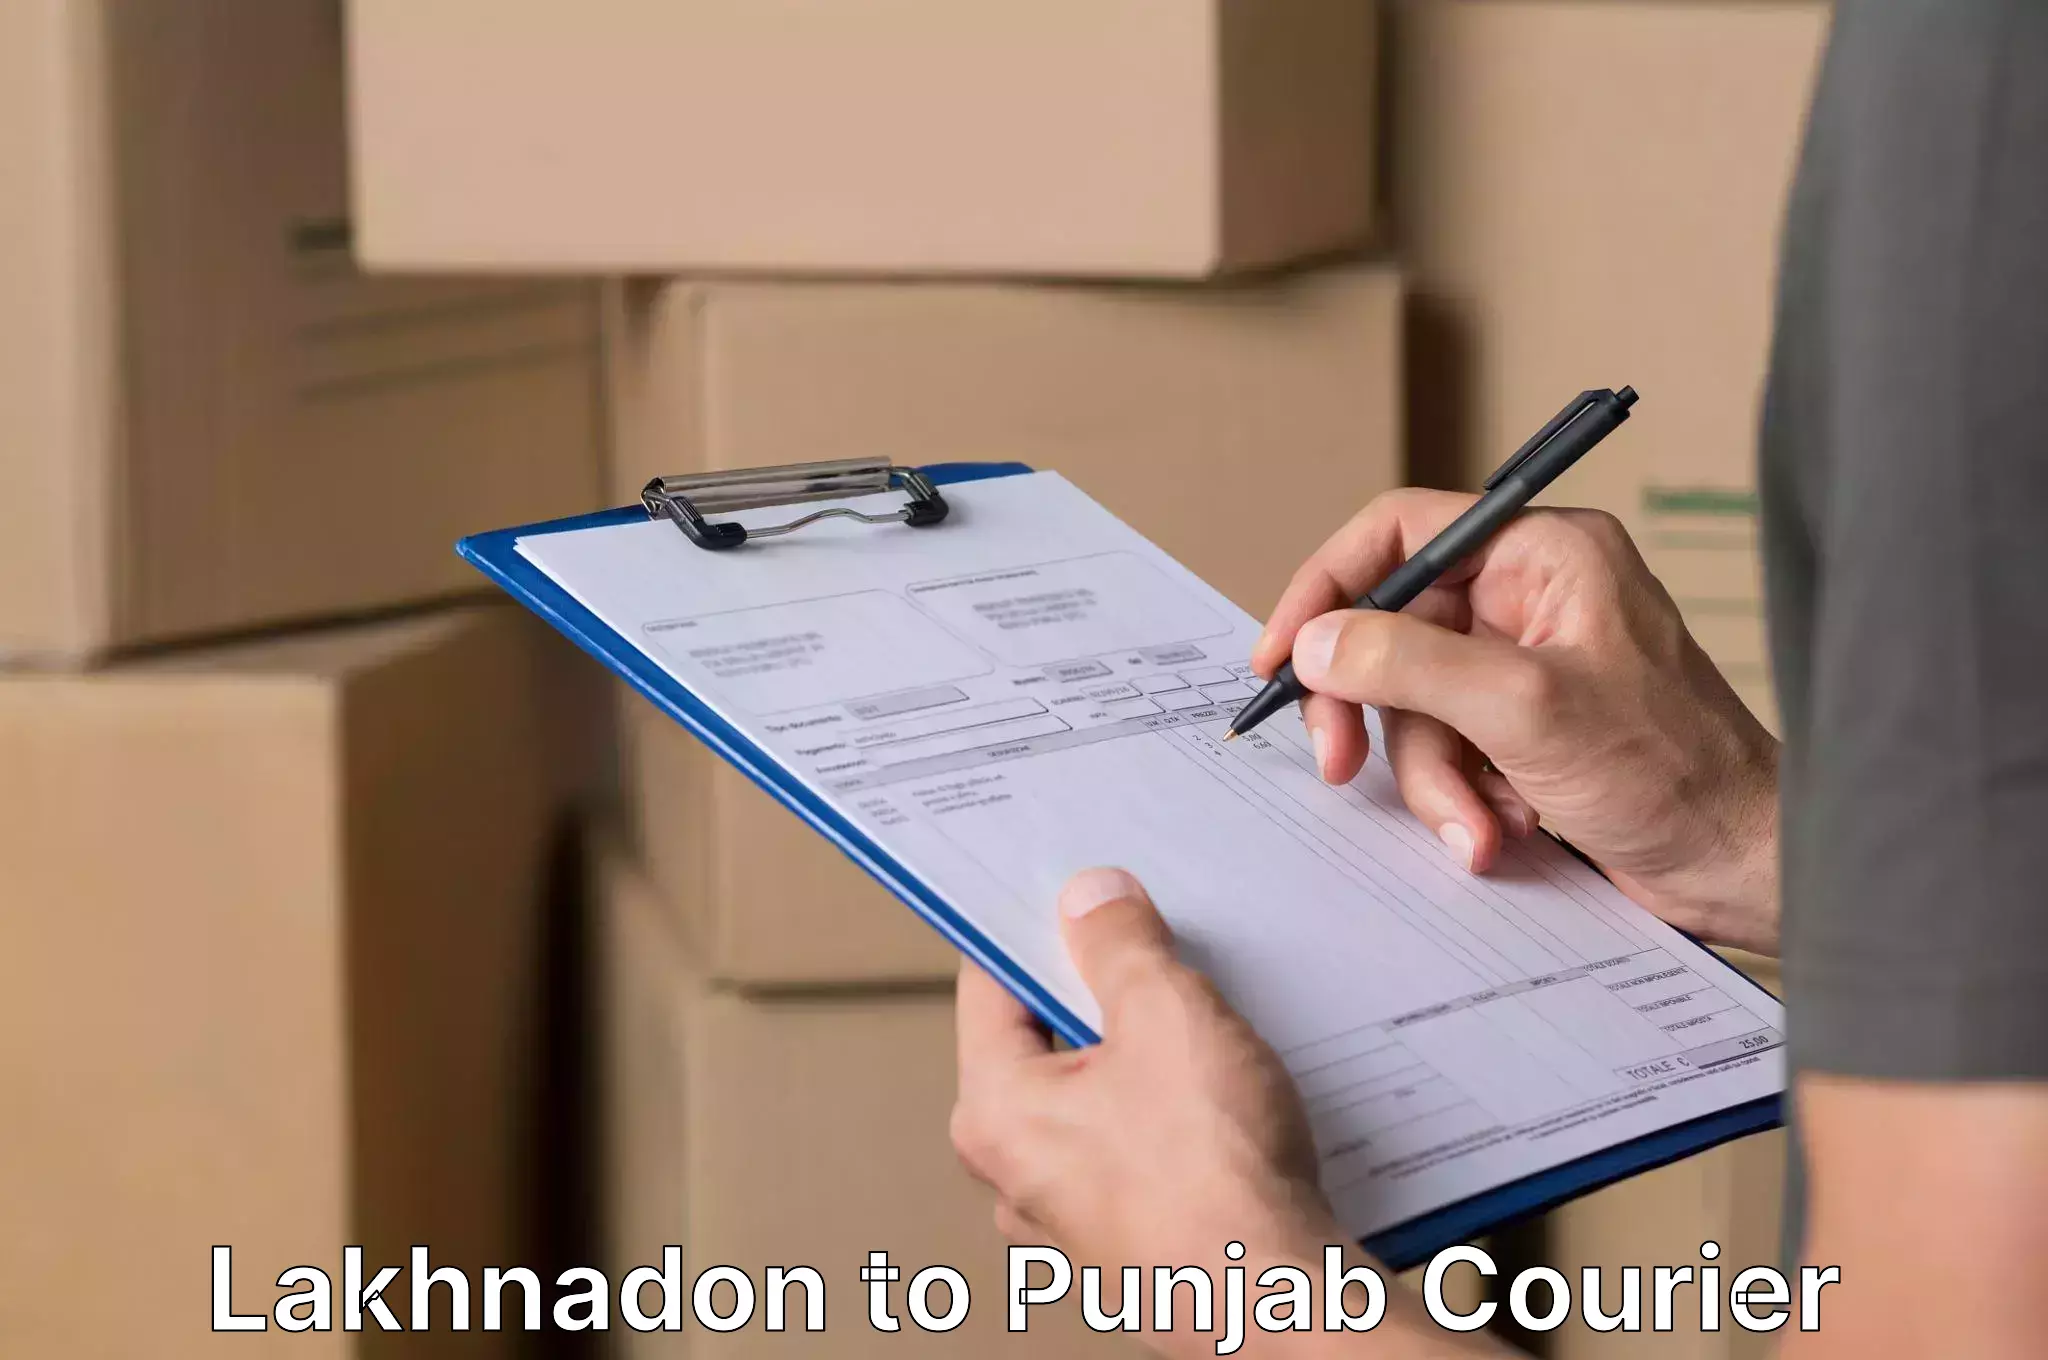 Furniture transport services Lakhnadon to Punjab